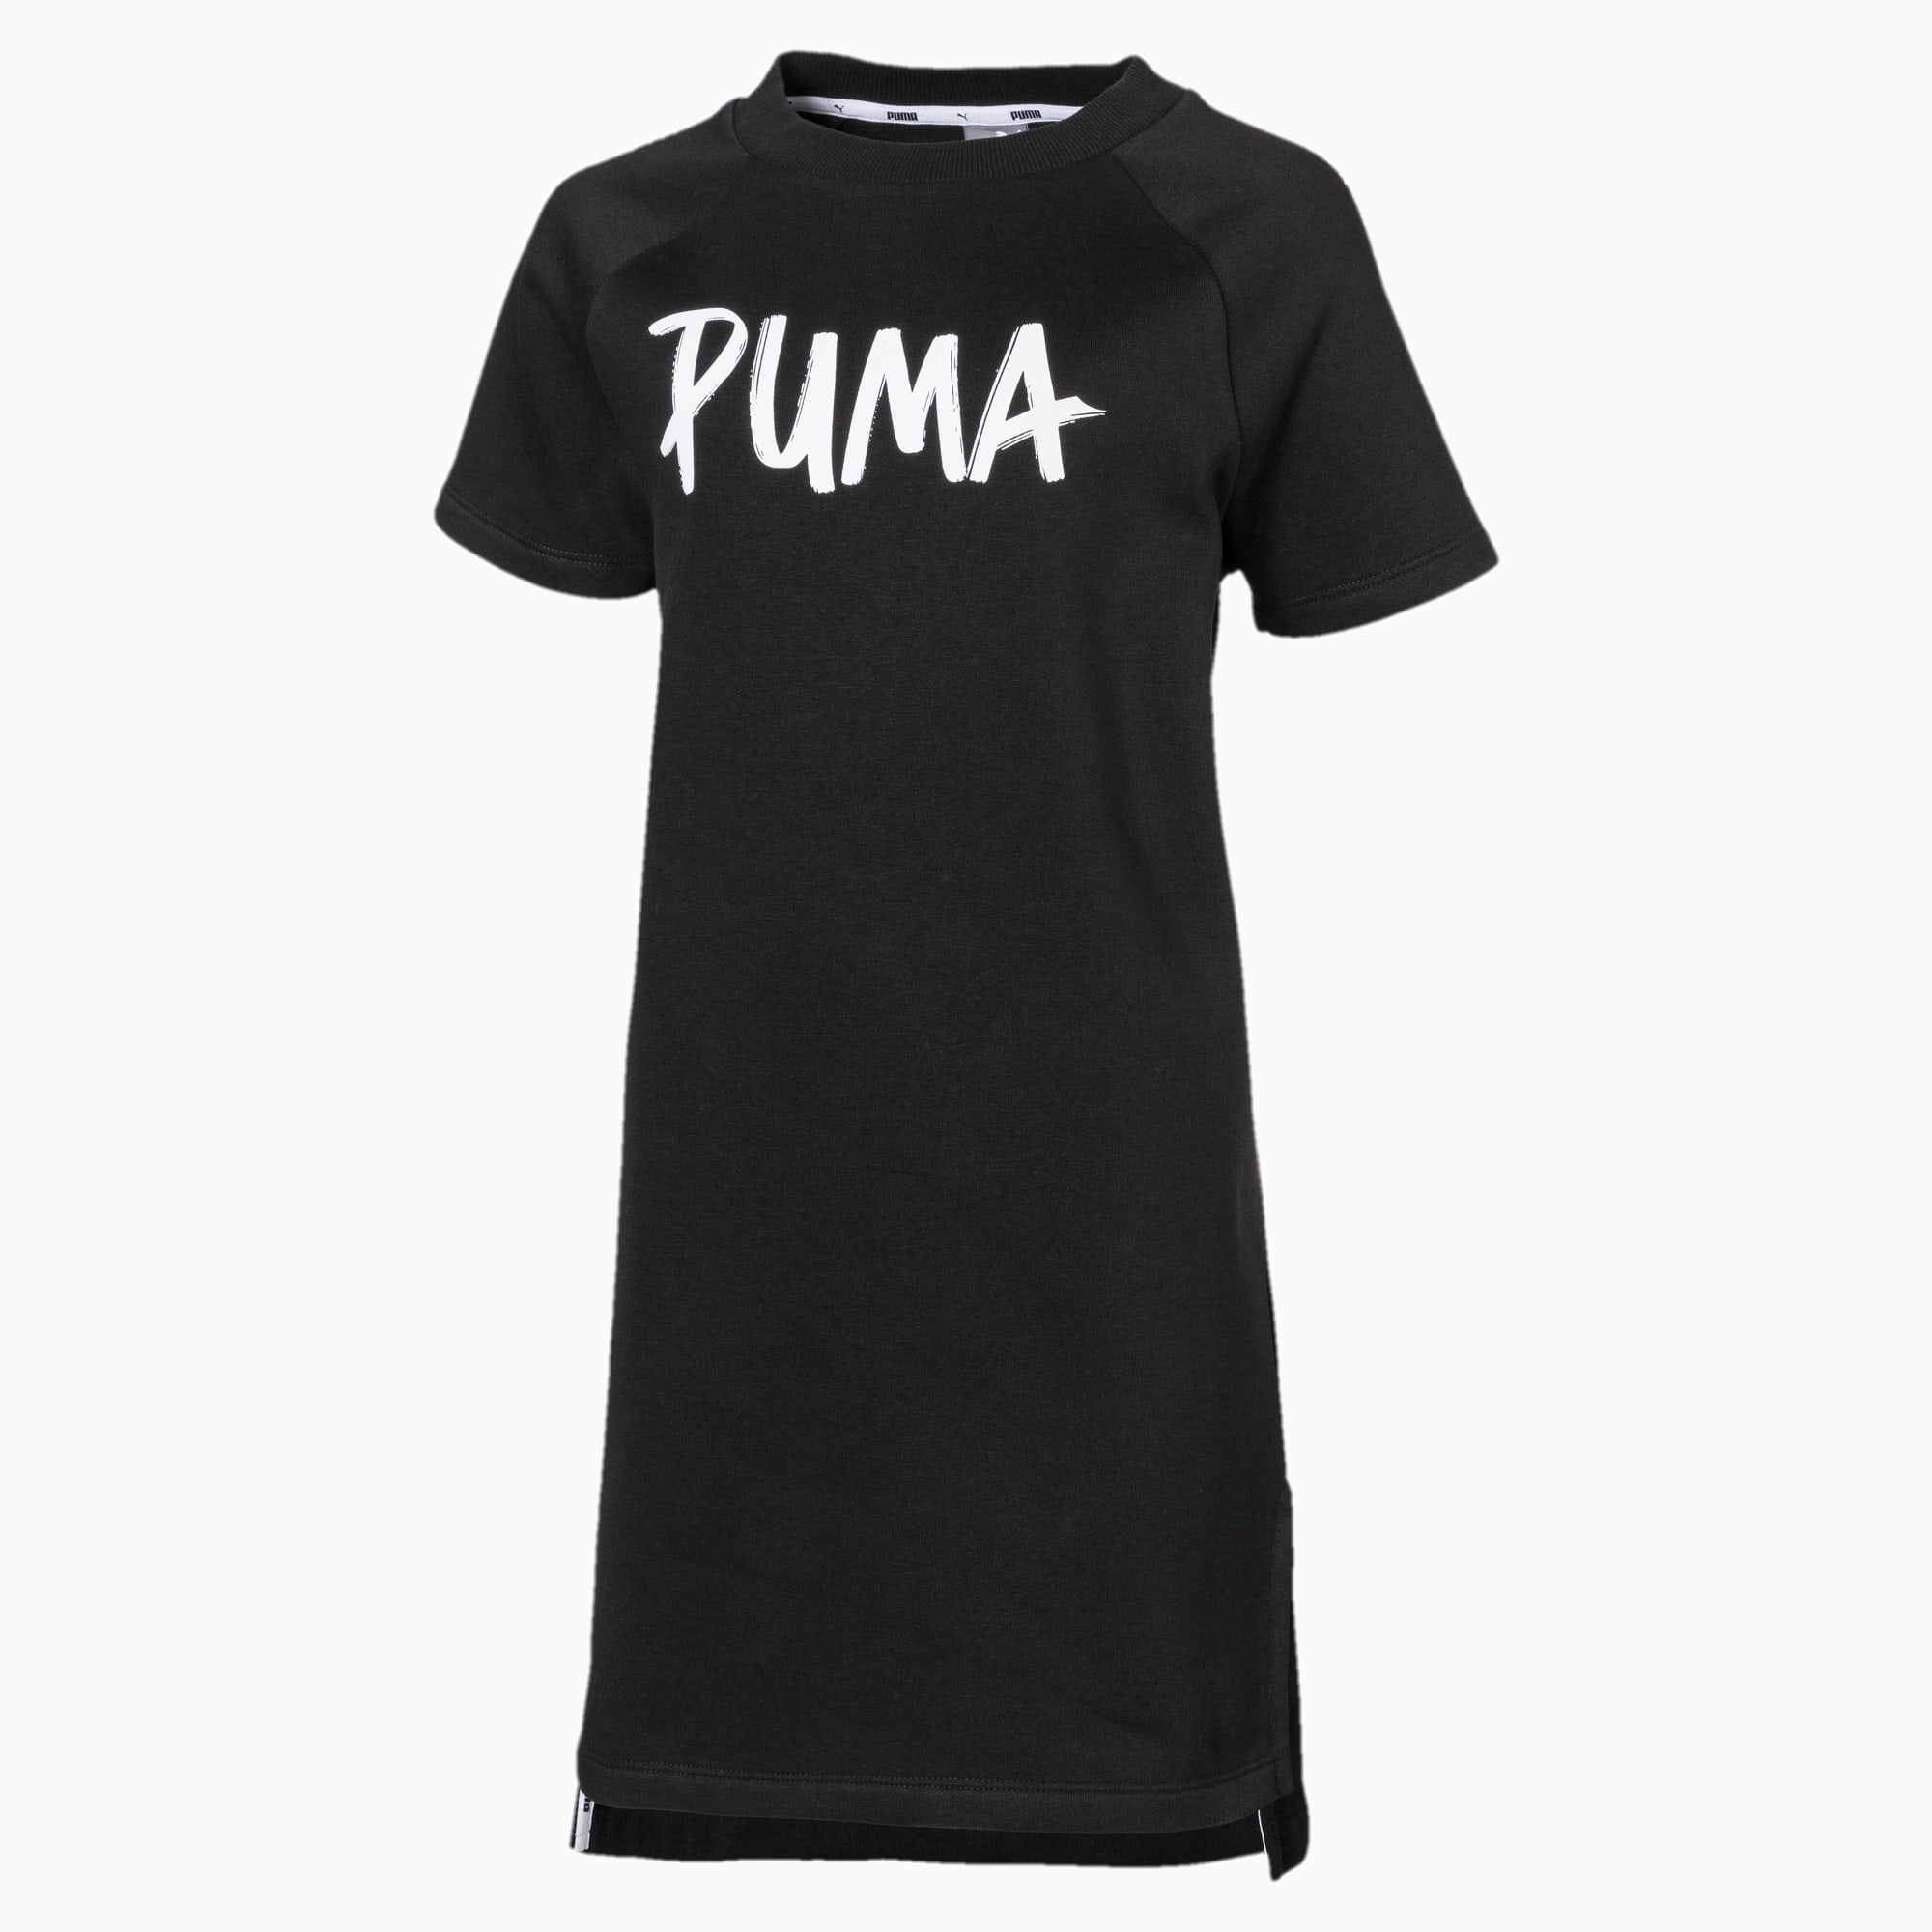 puma ladies clothes